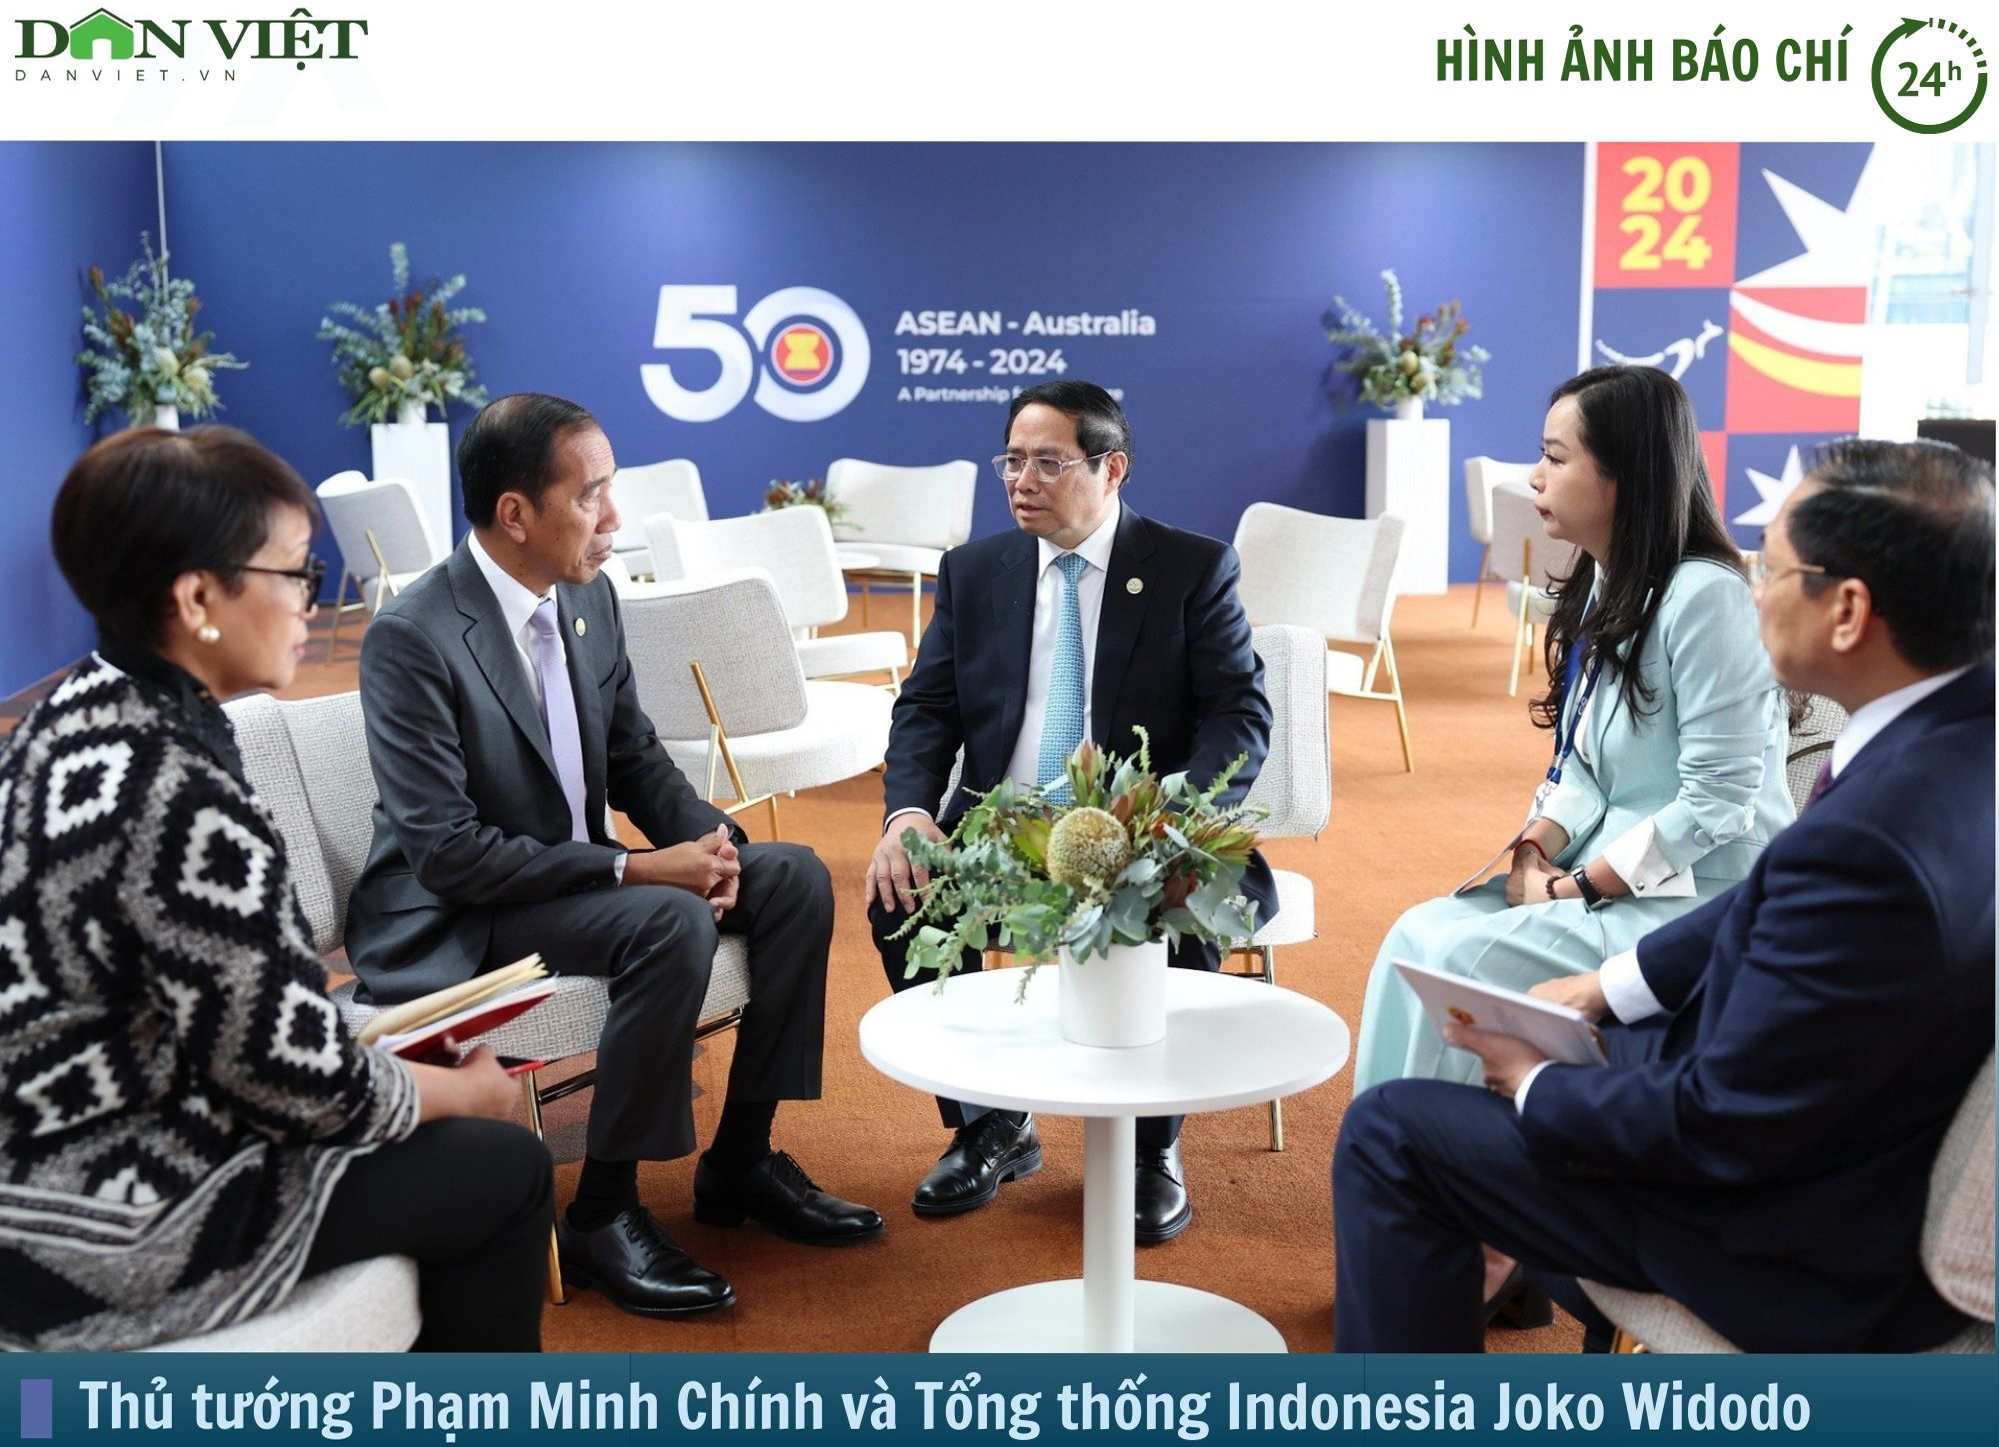 Hình ảnh báo chí 24h: Thủ tướng Phạm Minh Chính gặp tất cả lãnh đạo dự hội nghị ASEAN - Australia- Ảnh 1.